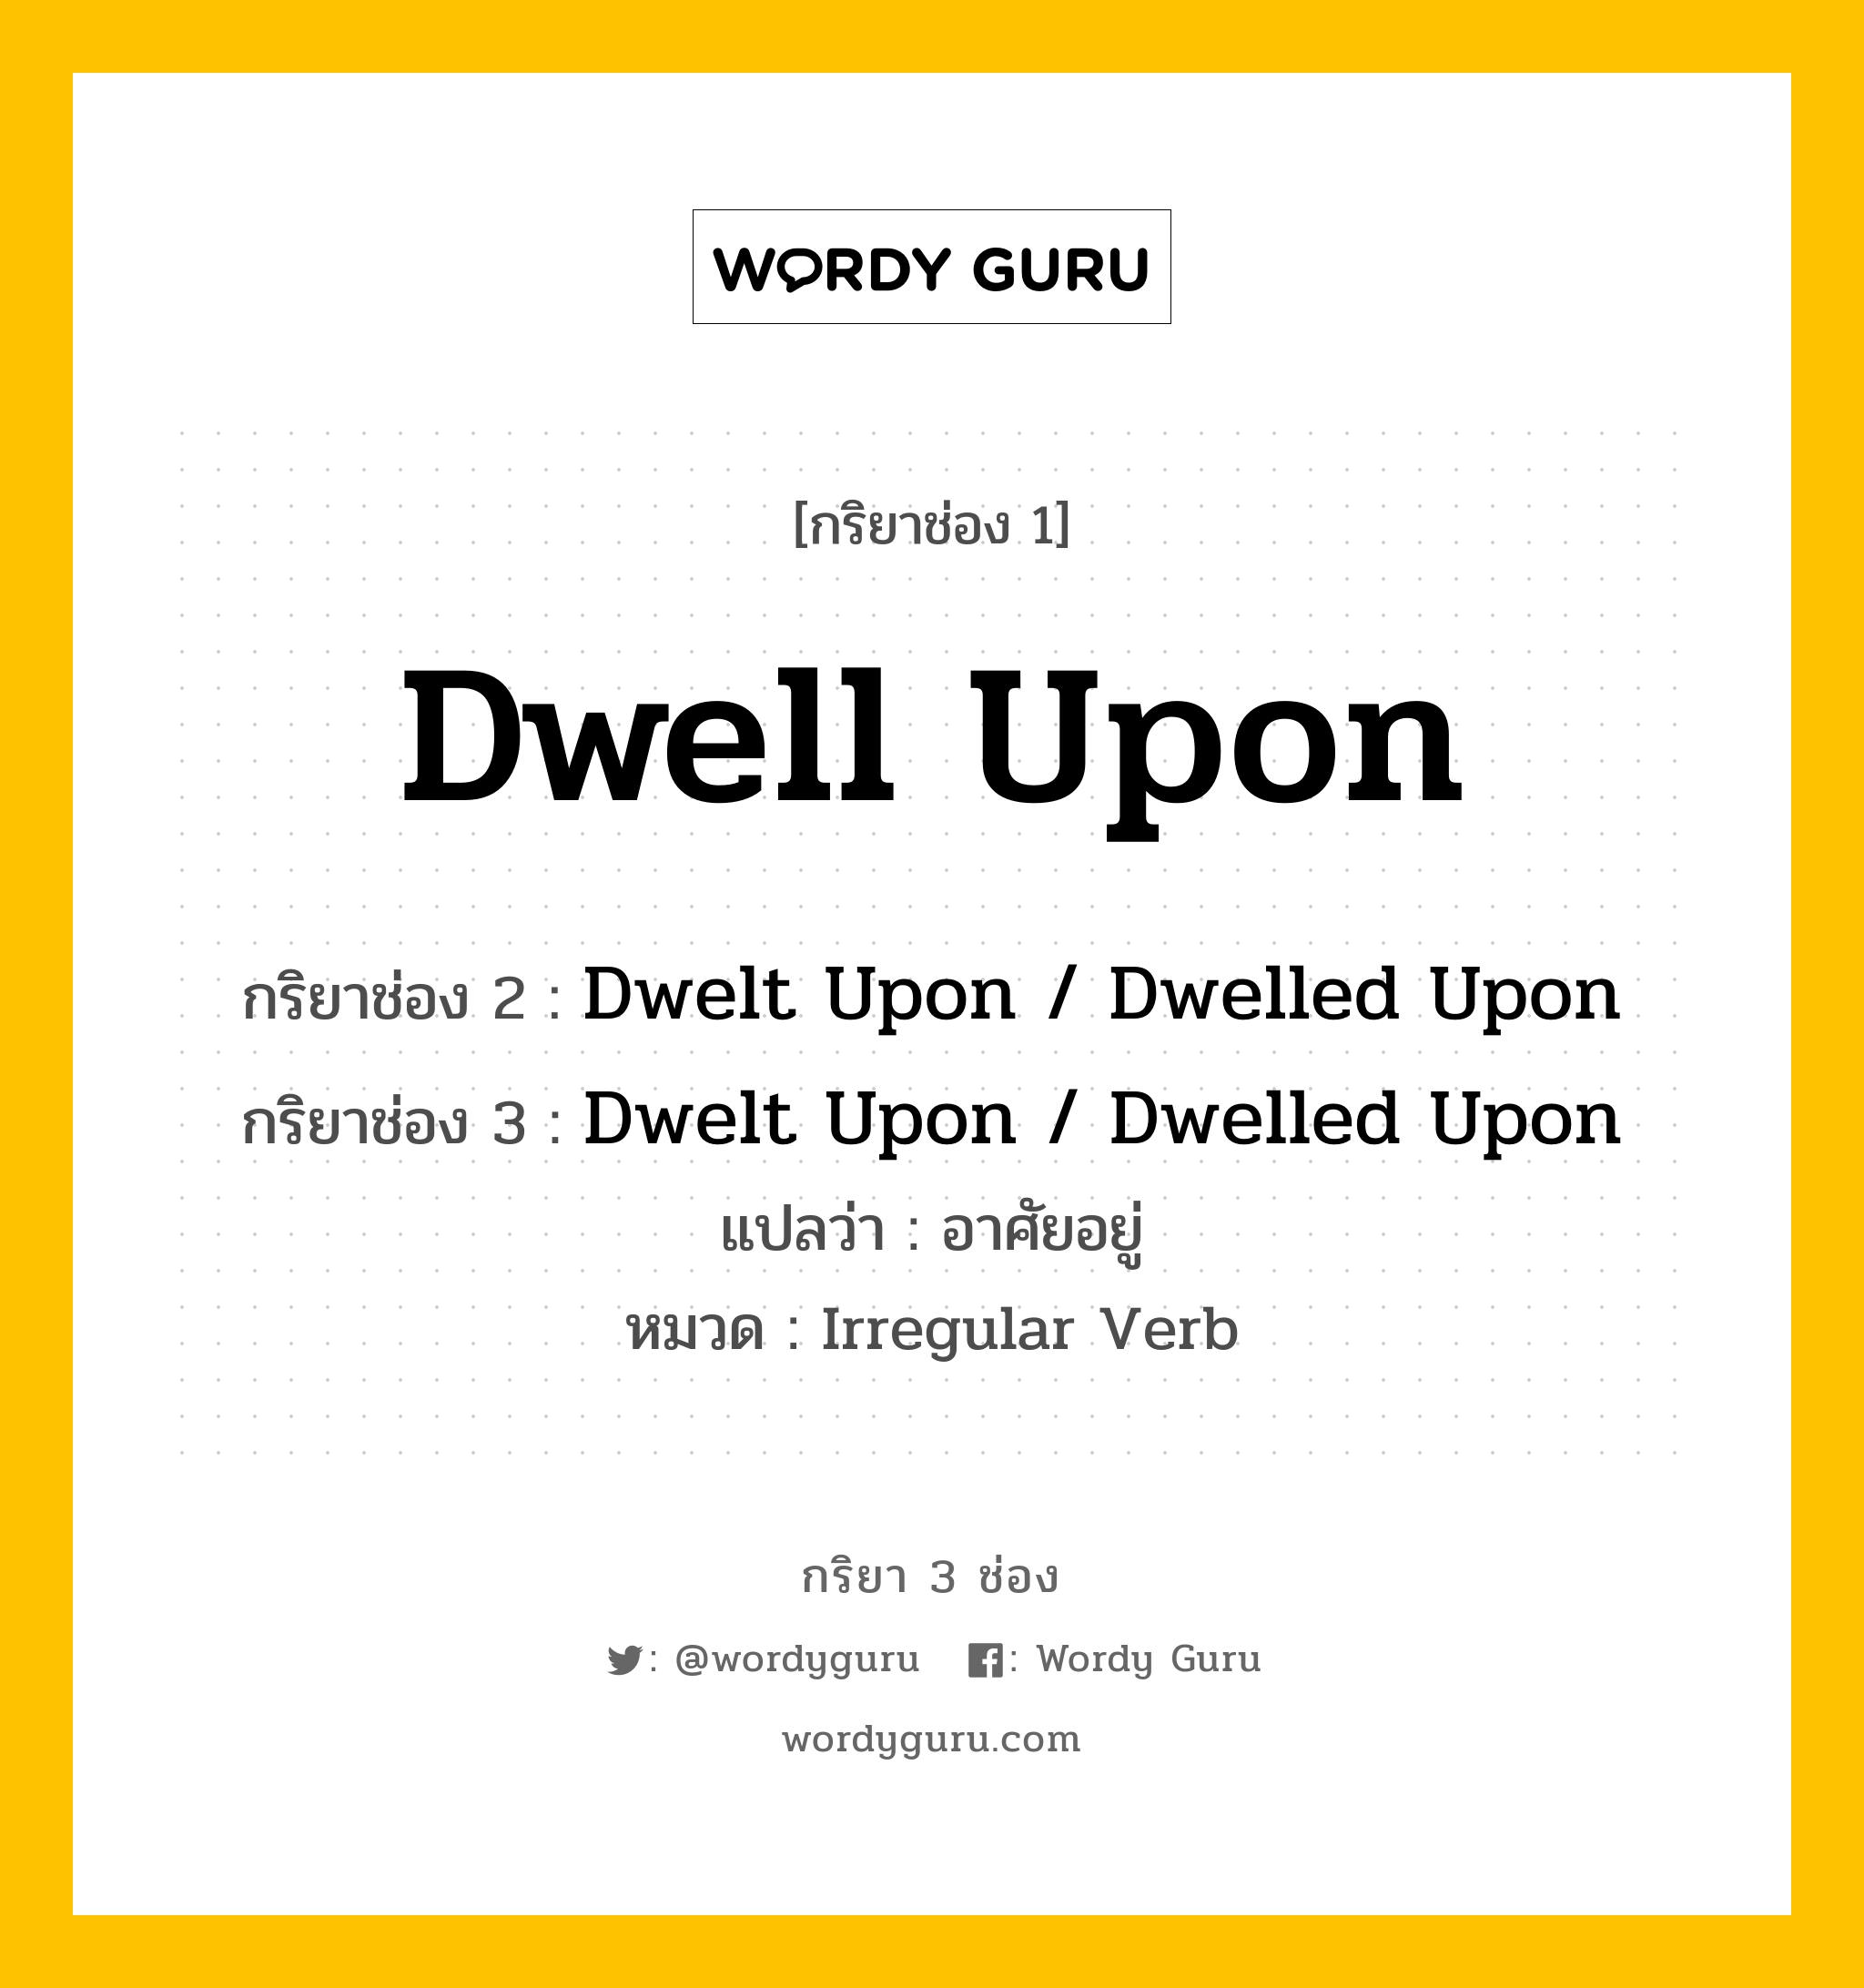 กริยา 3 ช่อง ของ Dwell Upon คืออะไร? มาดูคำอ่าน คำแปลกันเลย, กริยาช่อง 1 Dwell Upon กริยาช่อง 2 Dwelt Upon / Dwelled Upon กริยาช่อง 3 Dwelt Upon / Dwelled Upon แปลว่า อาศัยอยู่ หมวด Irregular Verb หมวด Irregular Verb